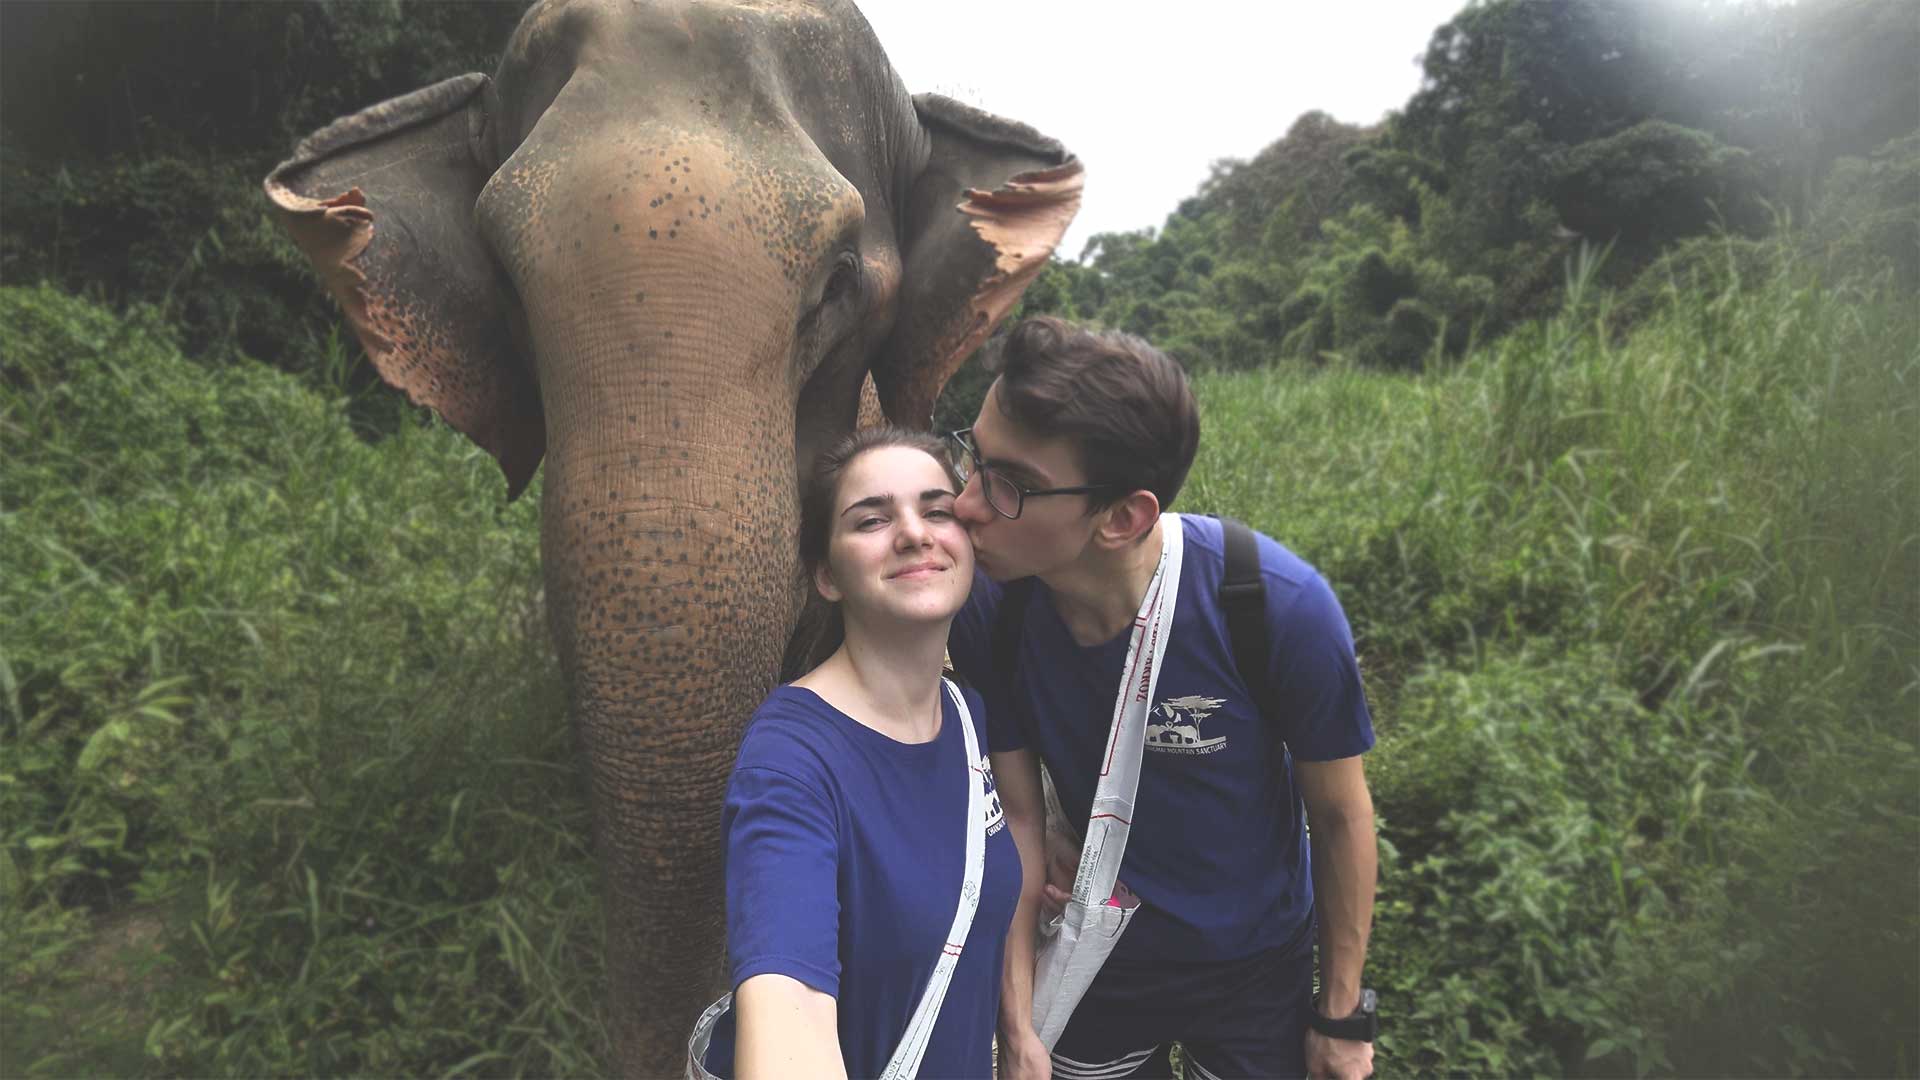 Elefantentour - Chiang Mai Mountain Sanctuary - Trekking-Tour durch den Dschungel - Jasmin und Valentin neben einem Elefanten